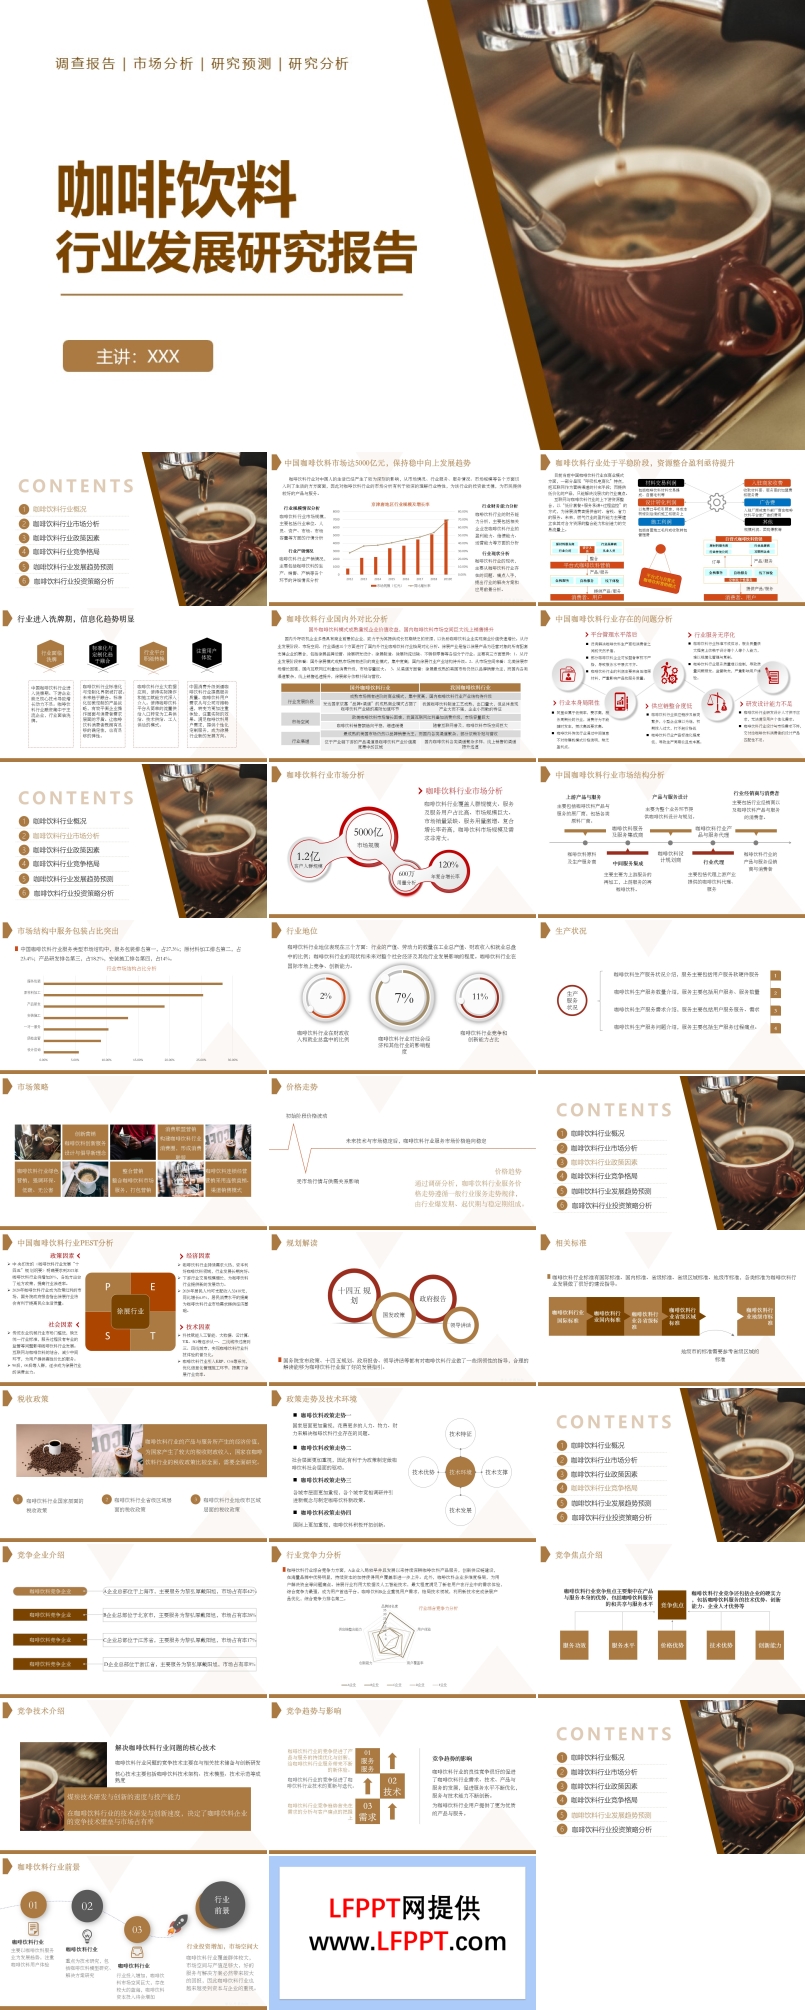 咖啡饮料市场分析研究报告ppt动态模板